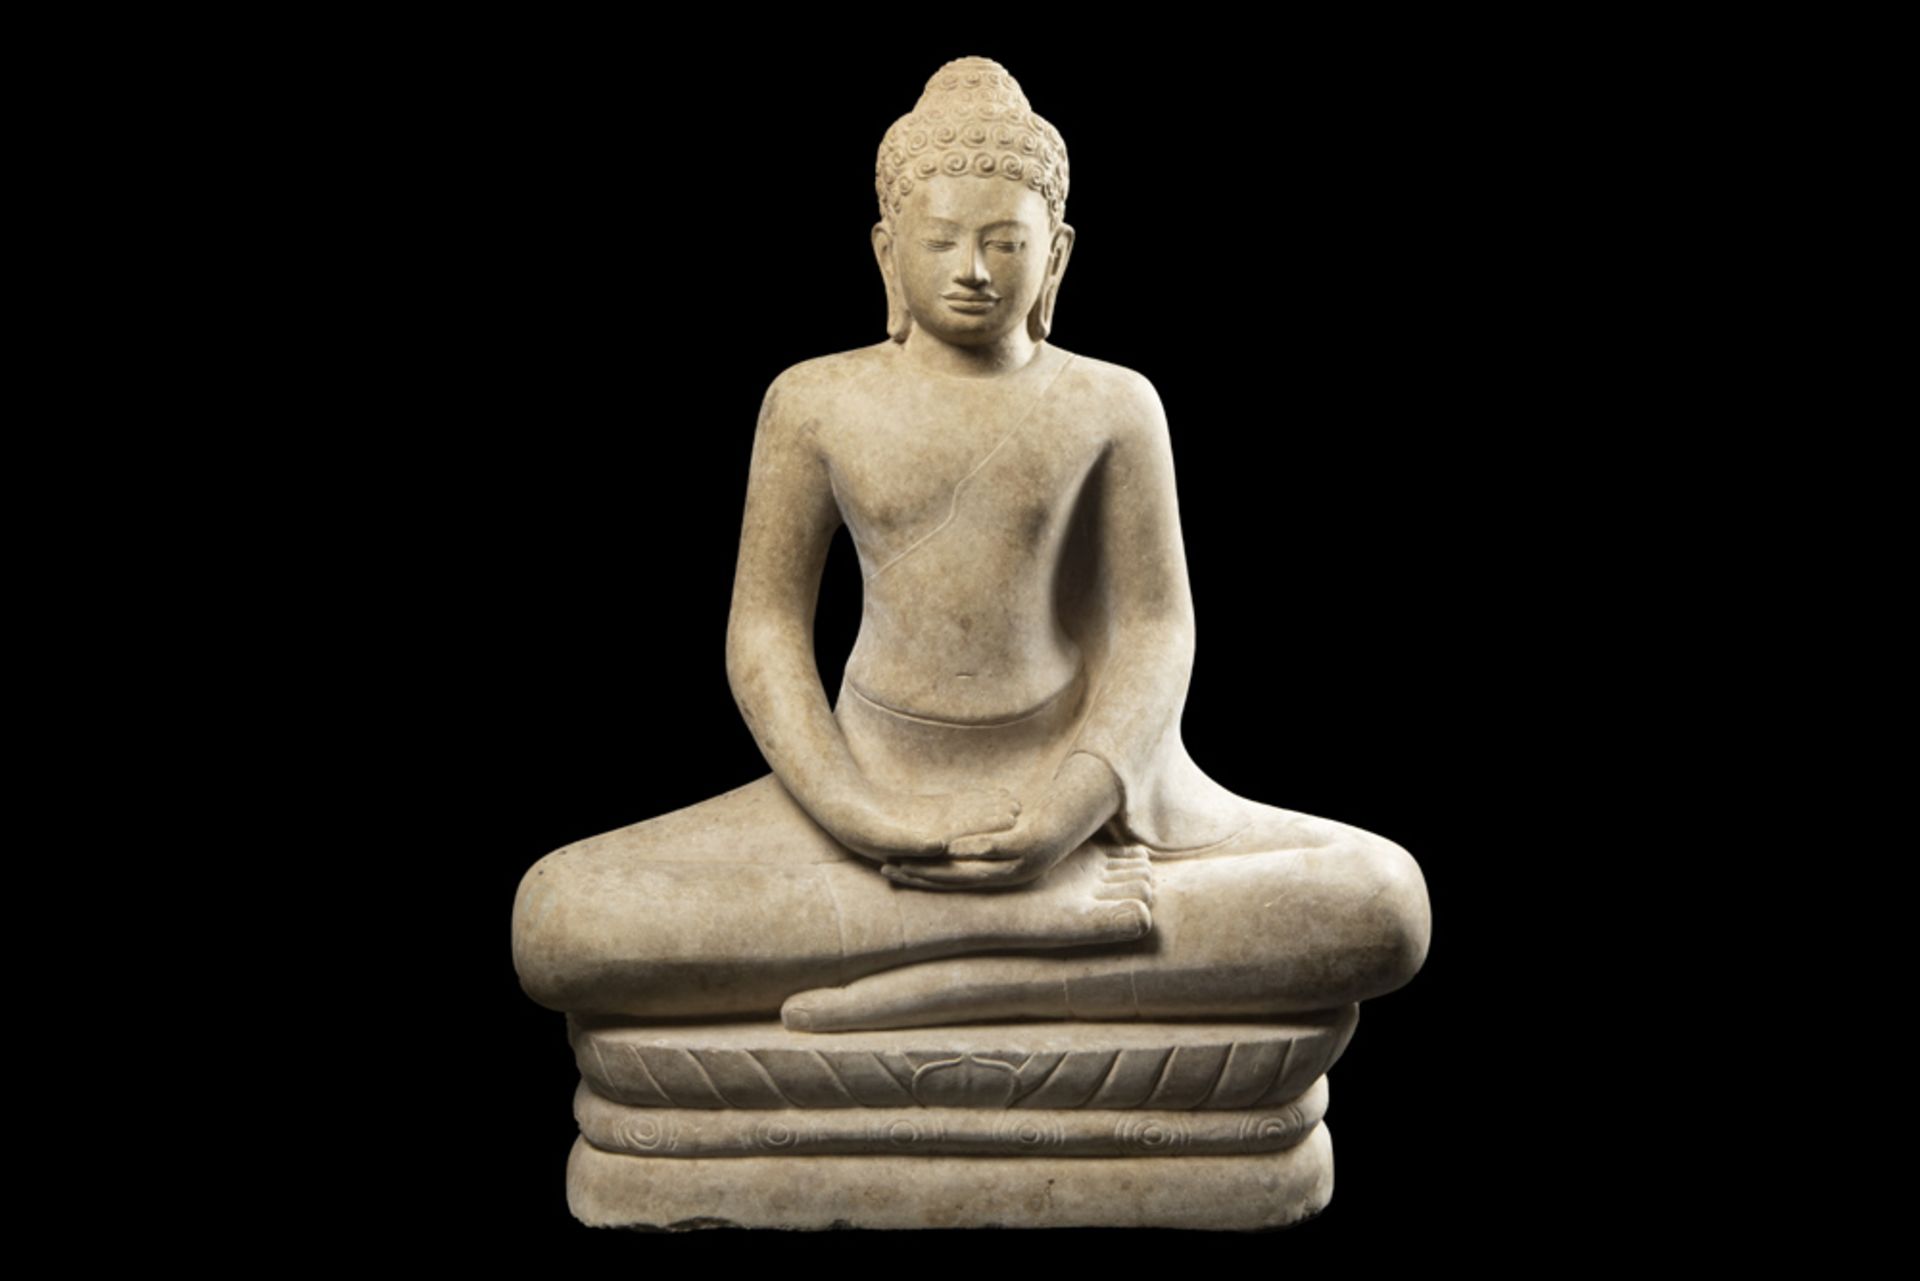 antique oriental "Buddha" sculpture in stone || Antieke Oosterse sculptuur in steen : "Zittende